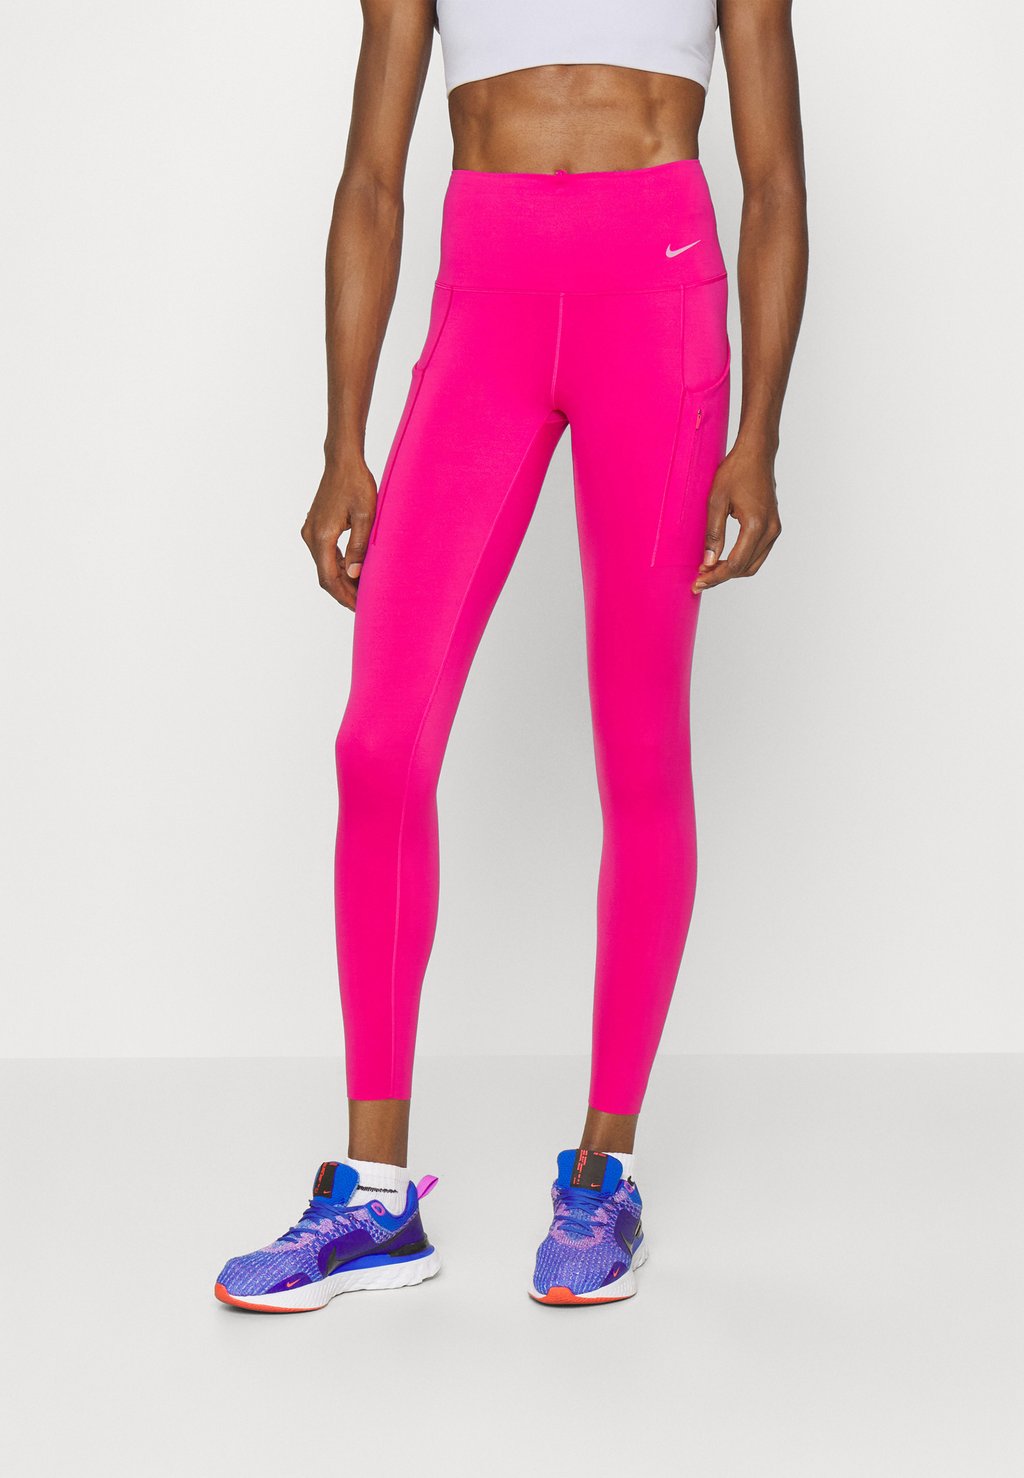 Леггинсы Nike Performance, розовый леггинсы nike performance 365 черный розовый белый